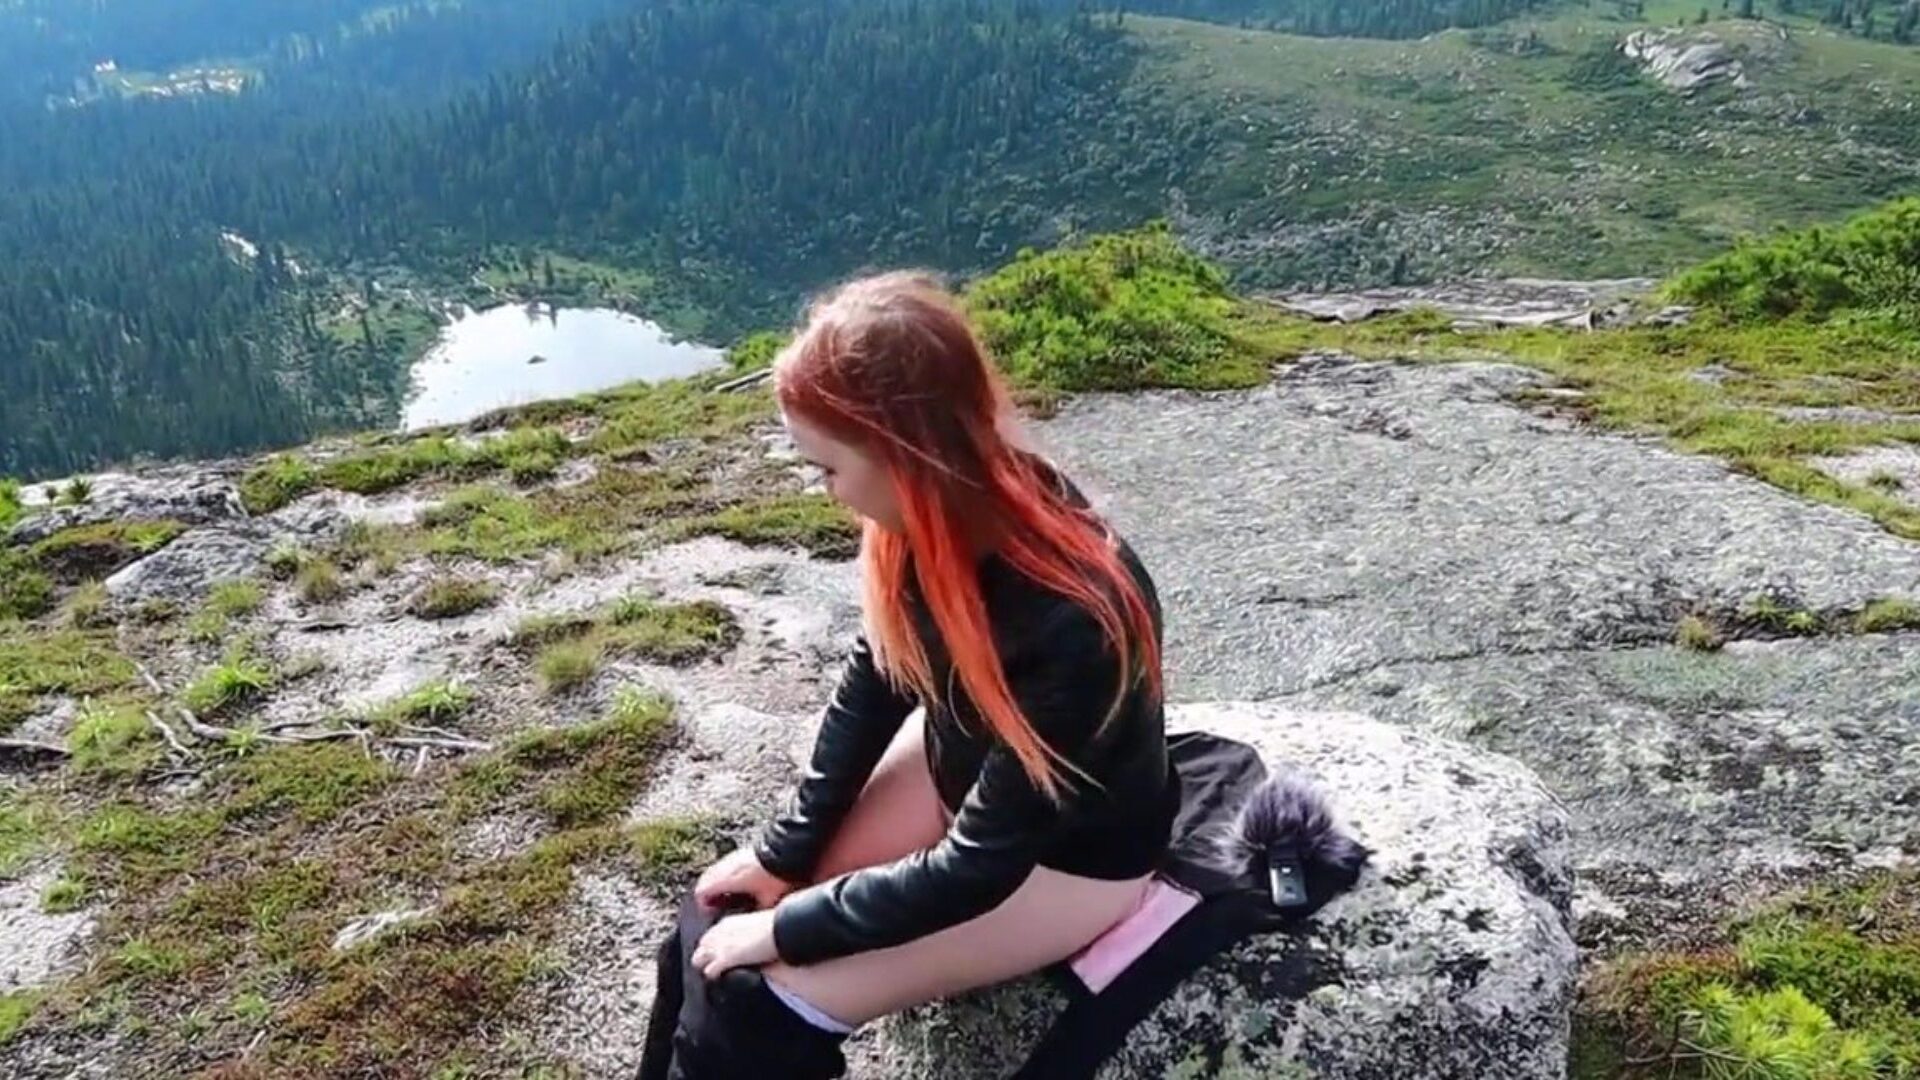 djevojka se odlučila opustiti, masturbirati svoju macu i steći orgazam visoko u planinama!